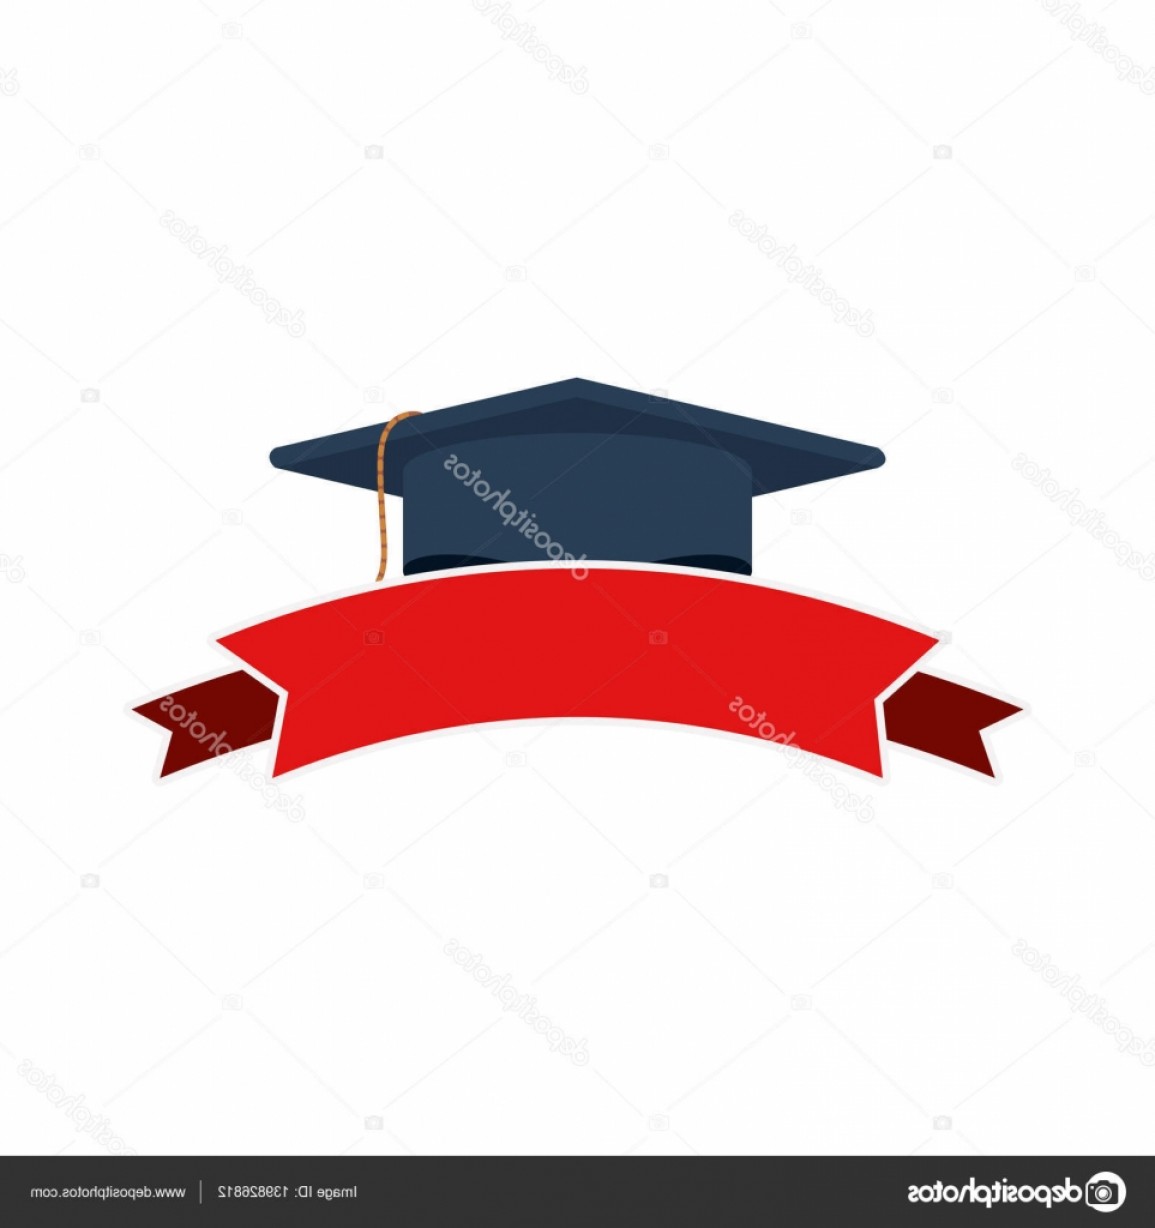 Download Graduation Cap Outline Vector at Vectorified.com ...